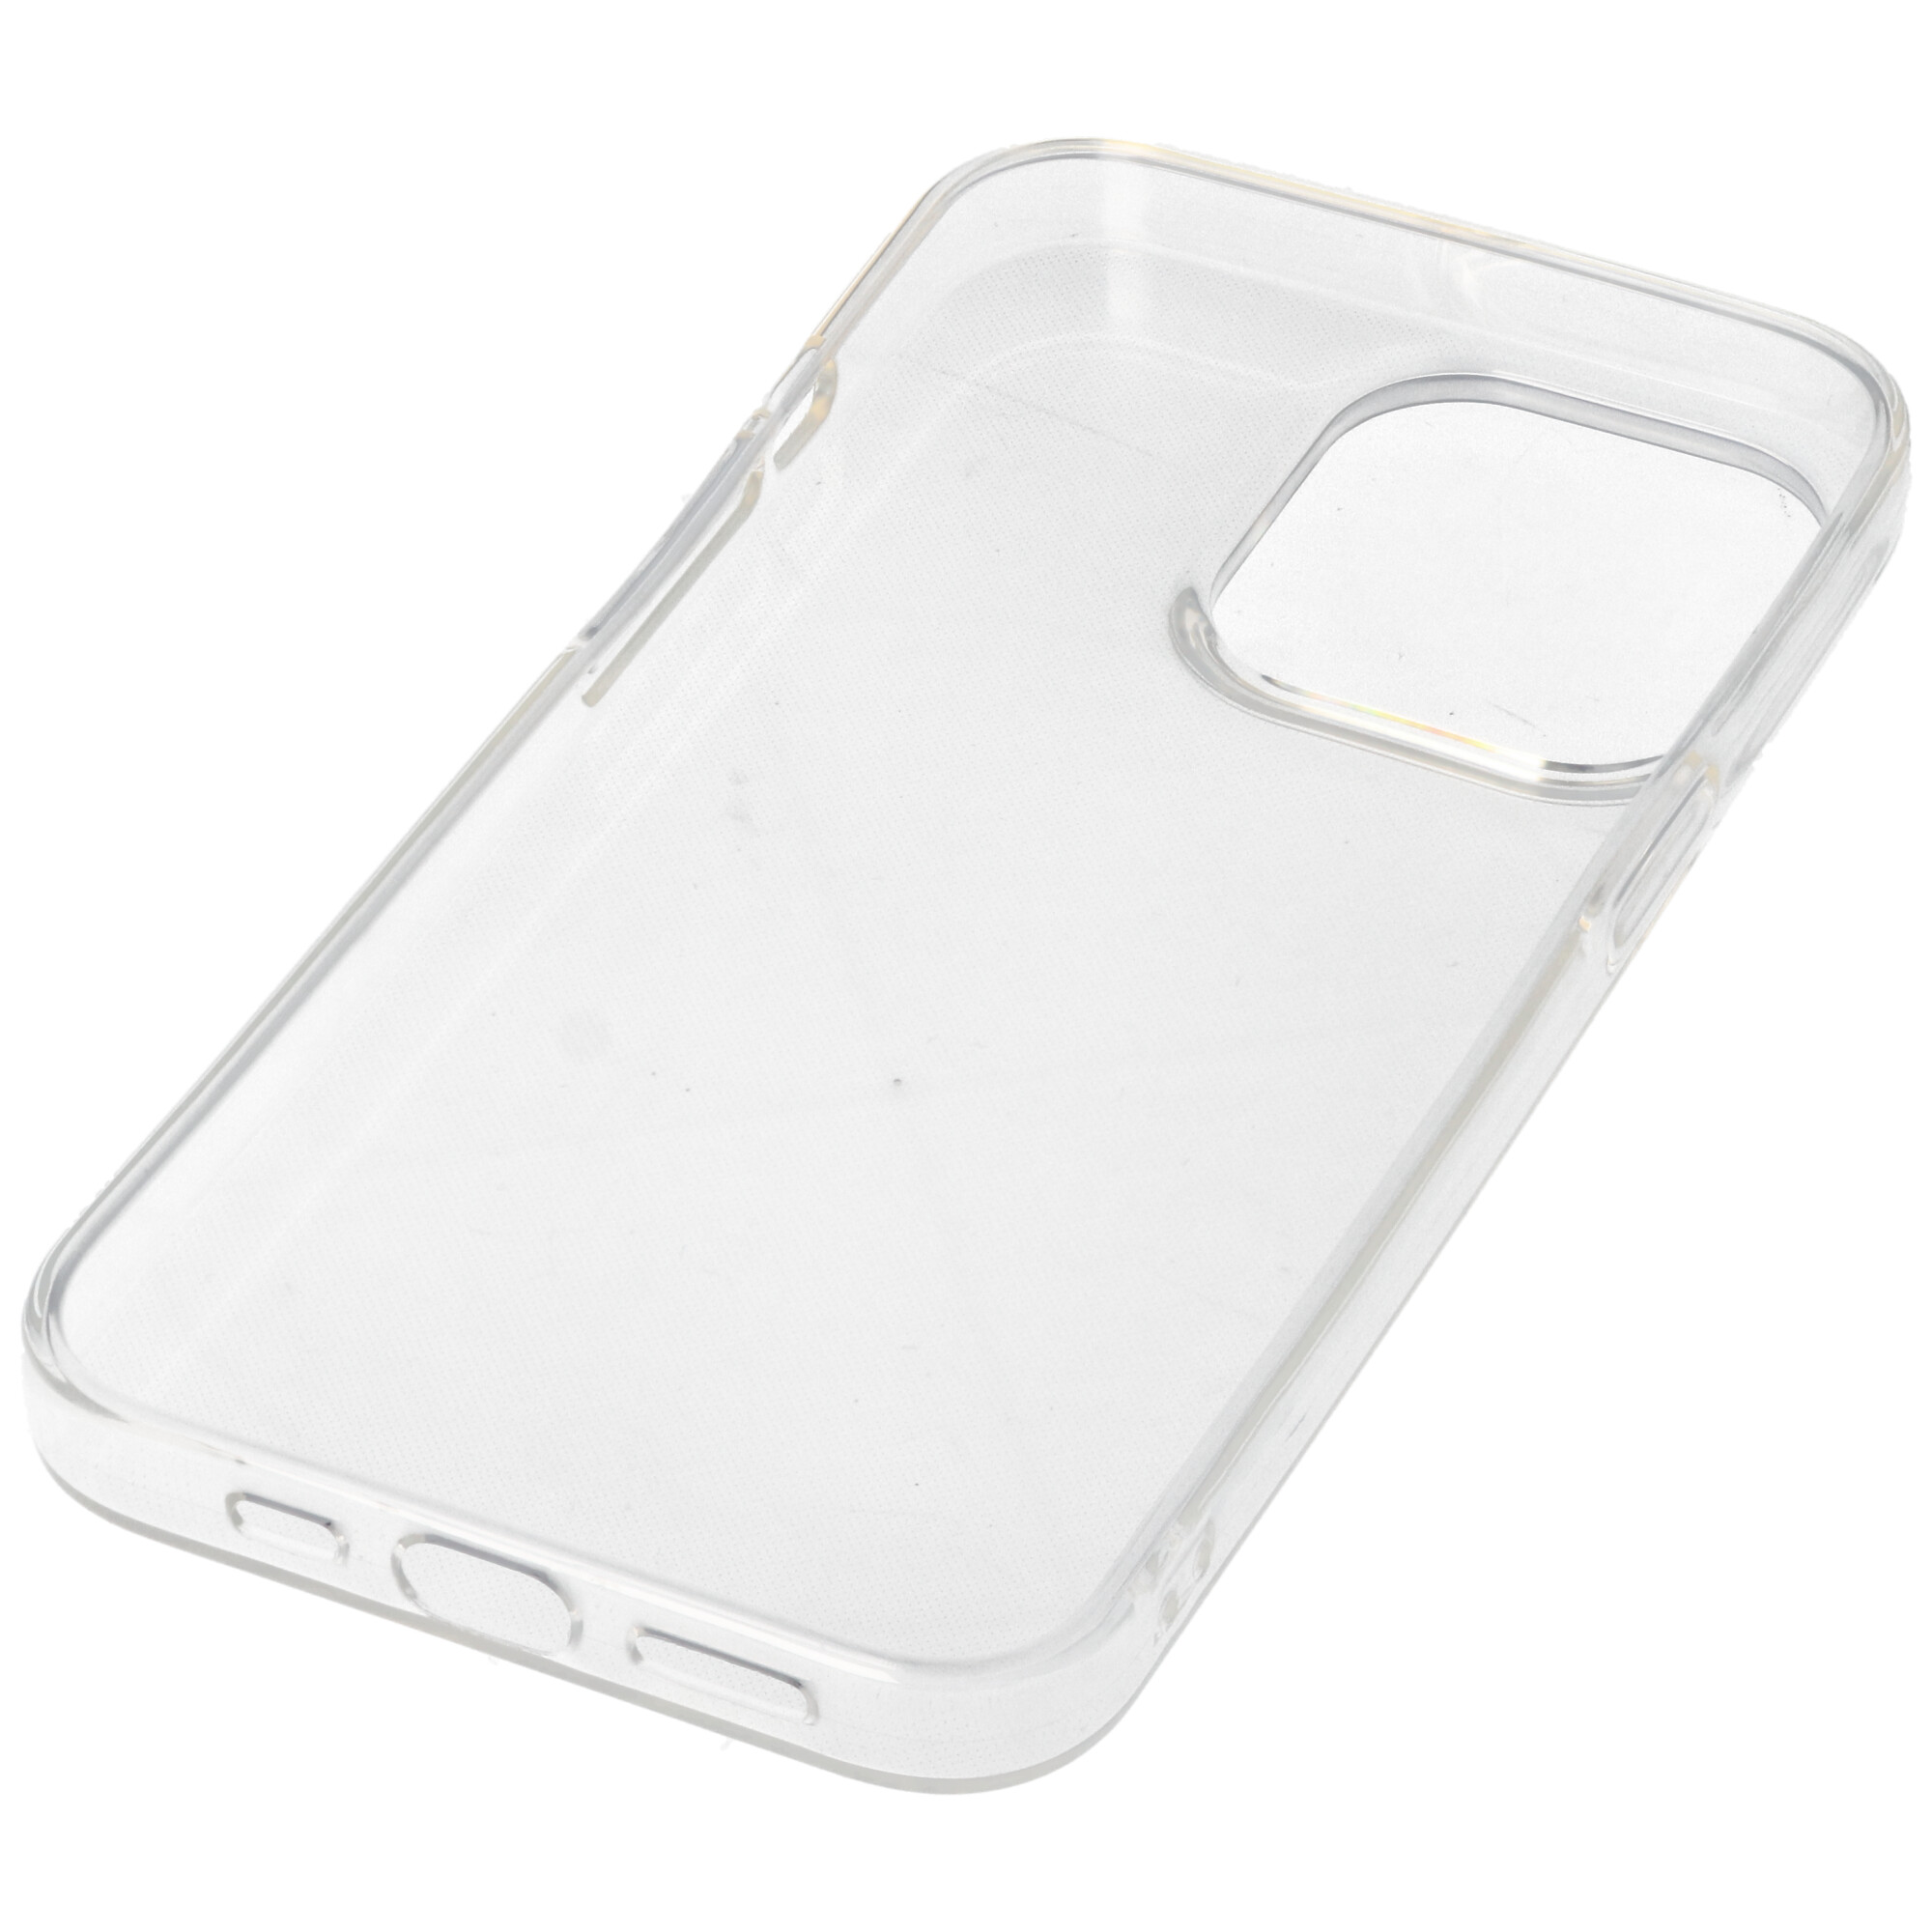 Hülle passend für Apple iPhone 13 Pro - transparente Schutzhülle, Anti-Gelb Luftkissen Fallschutz Silikon Handyhülle robustes TPU Case